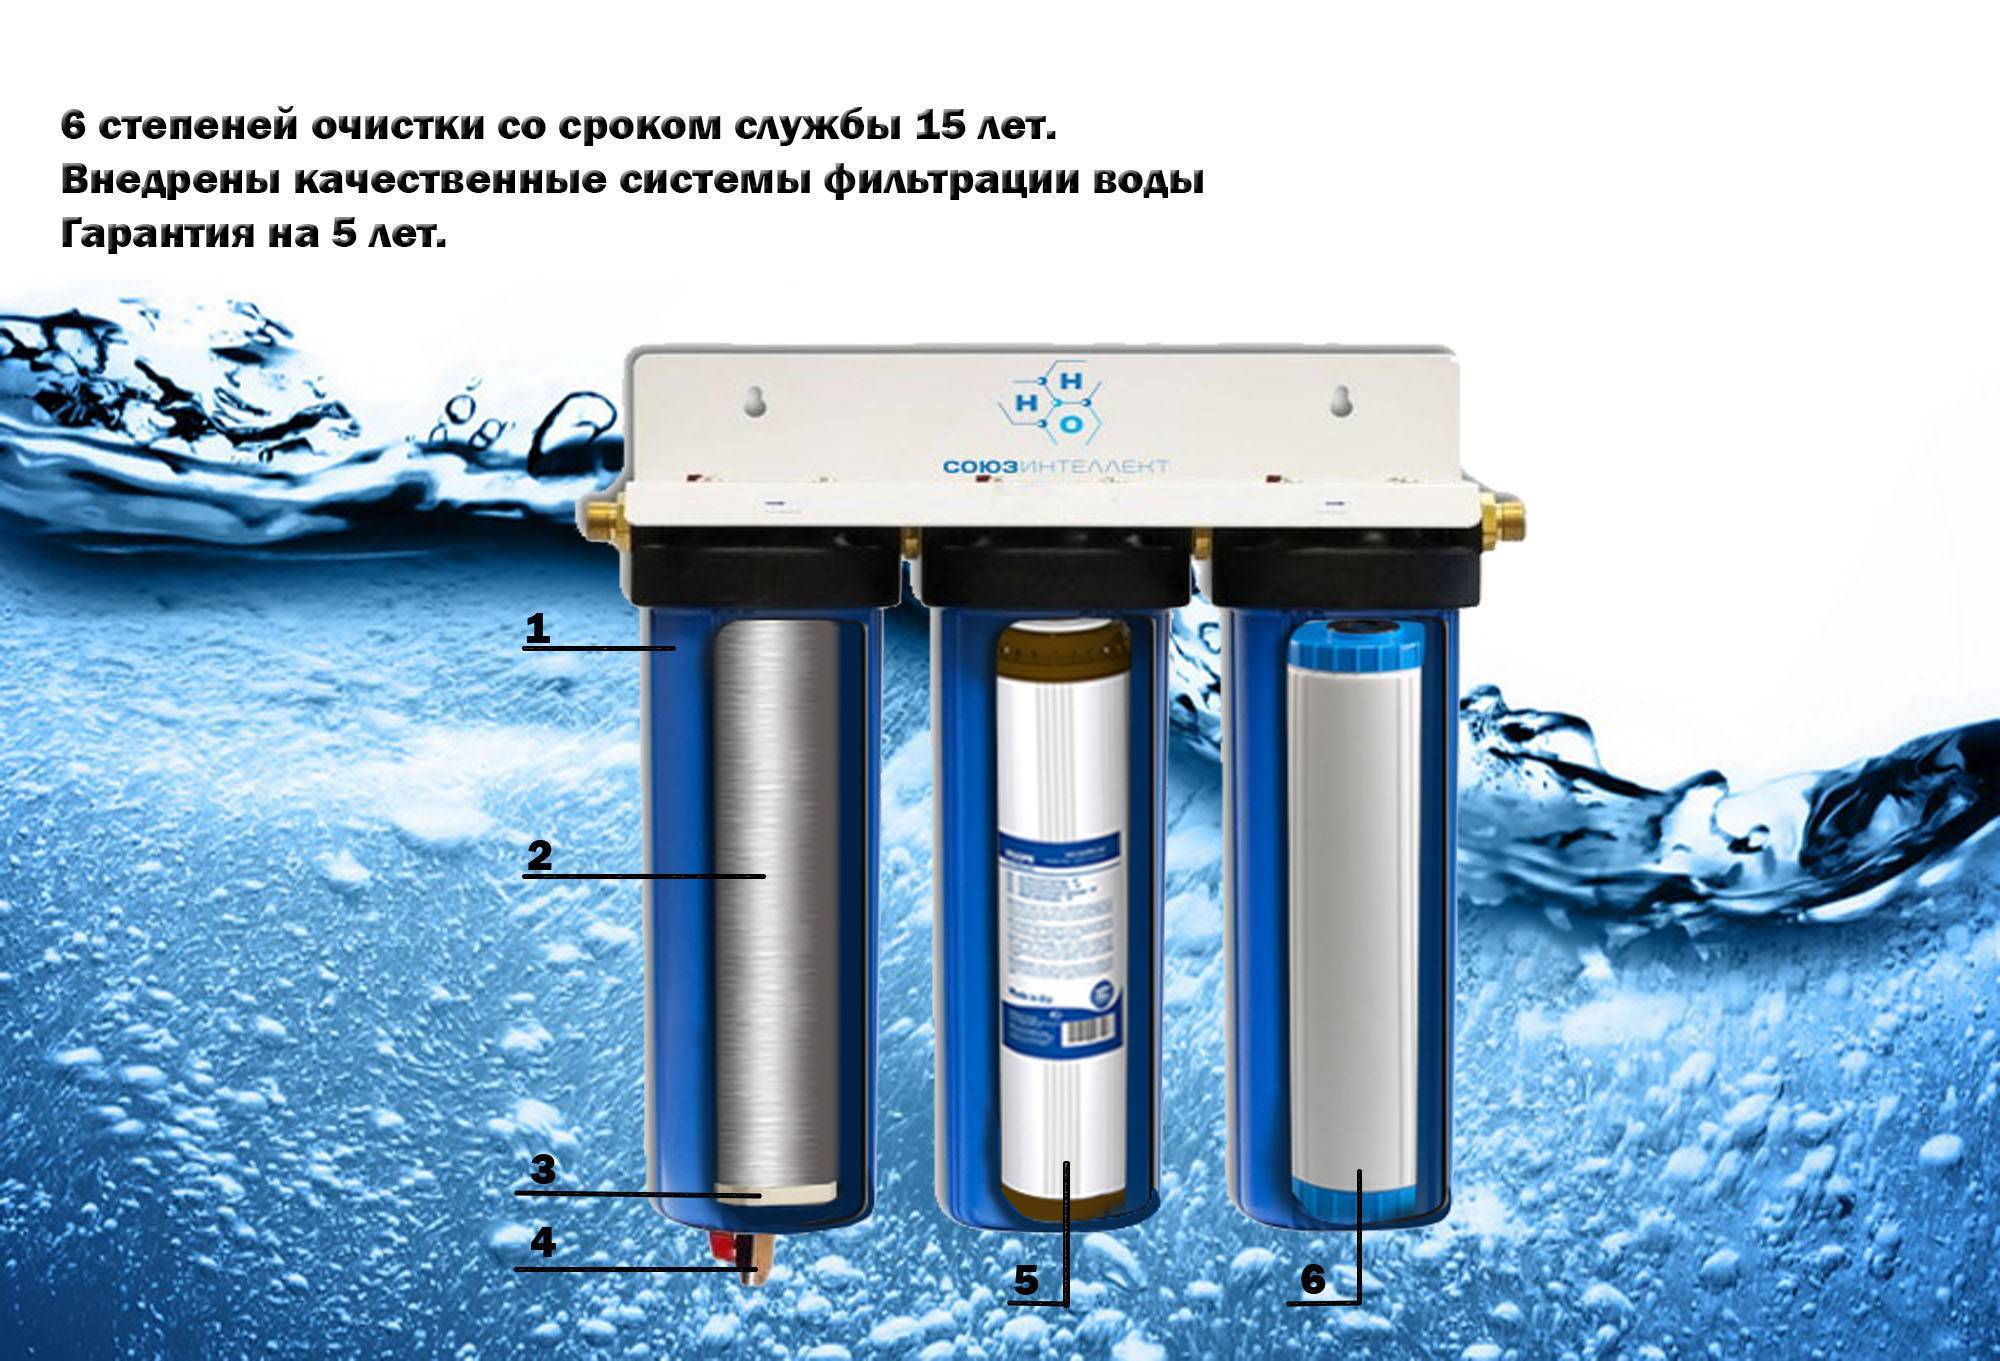 Степень очистки 1. Аурус фильтр для воды. Титановый фильтр для очистки воды. Титановые фильтры для очистки воды из скважины. Степени очистки воды фильтрами.